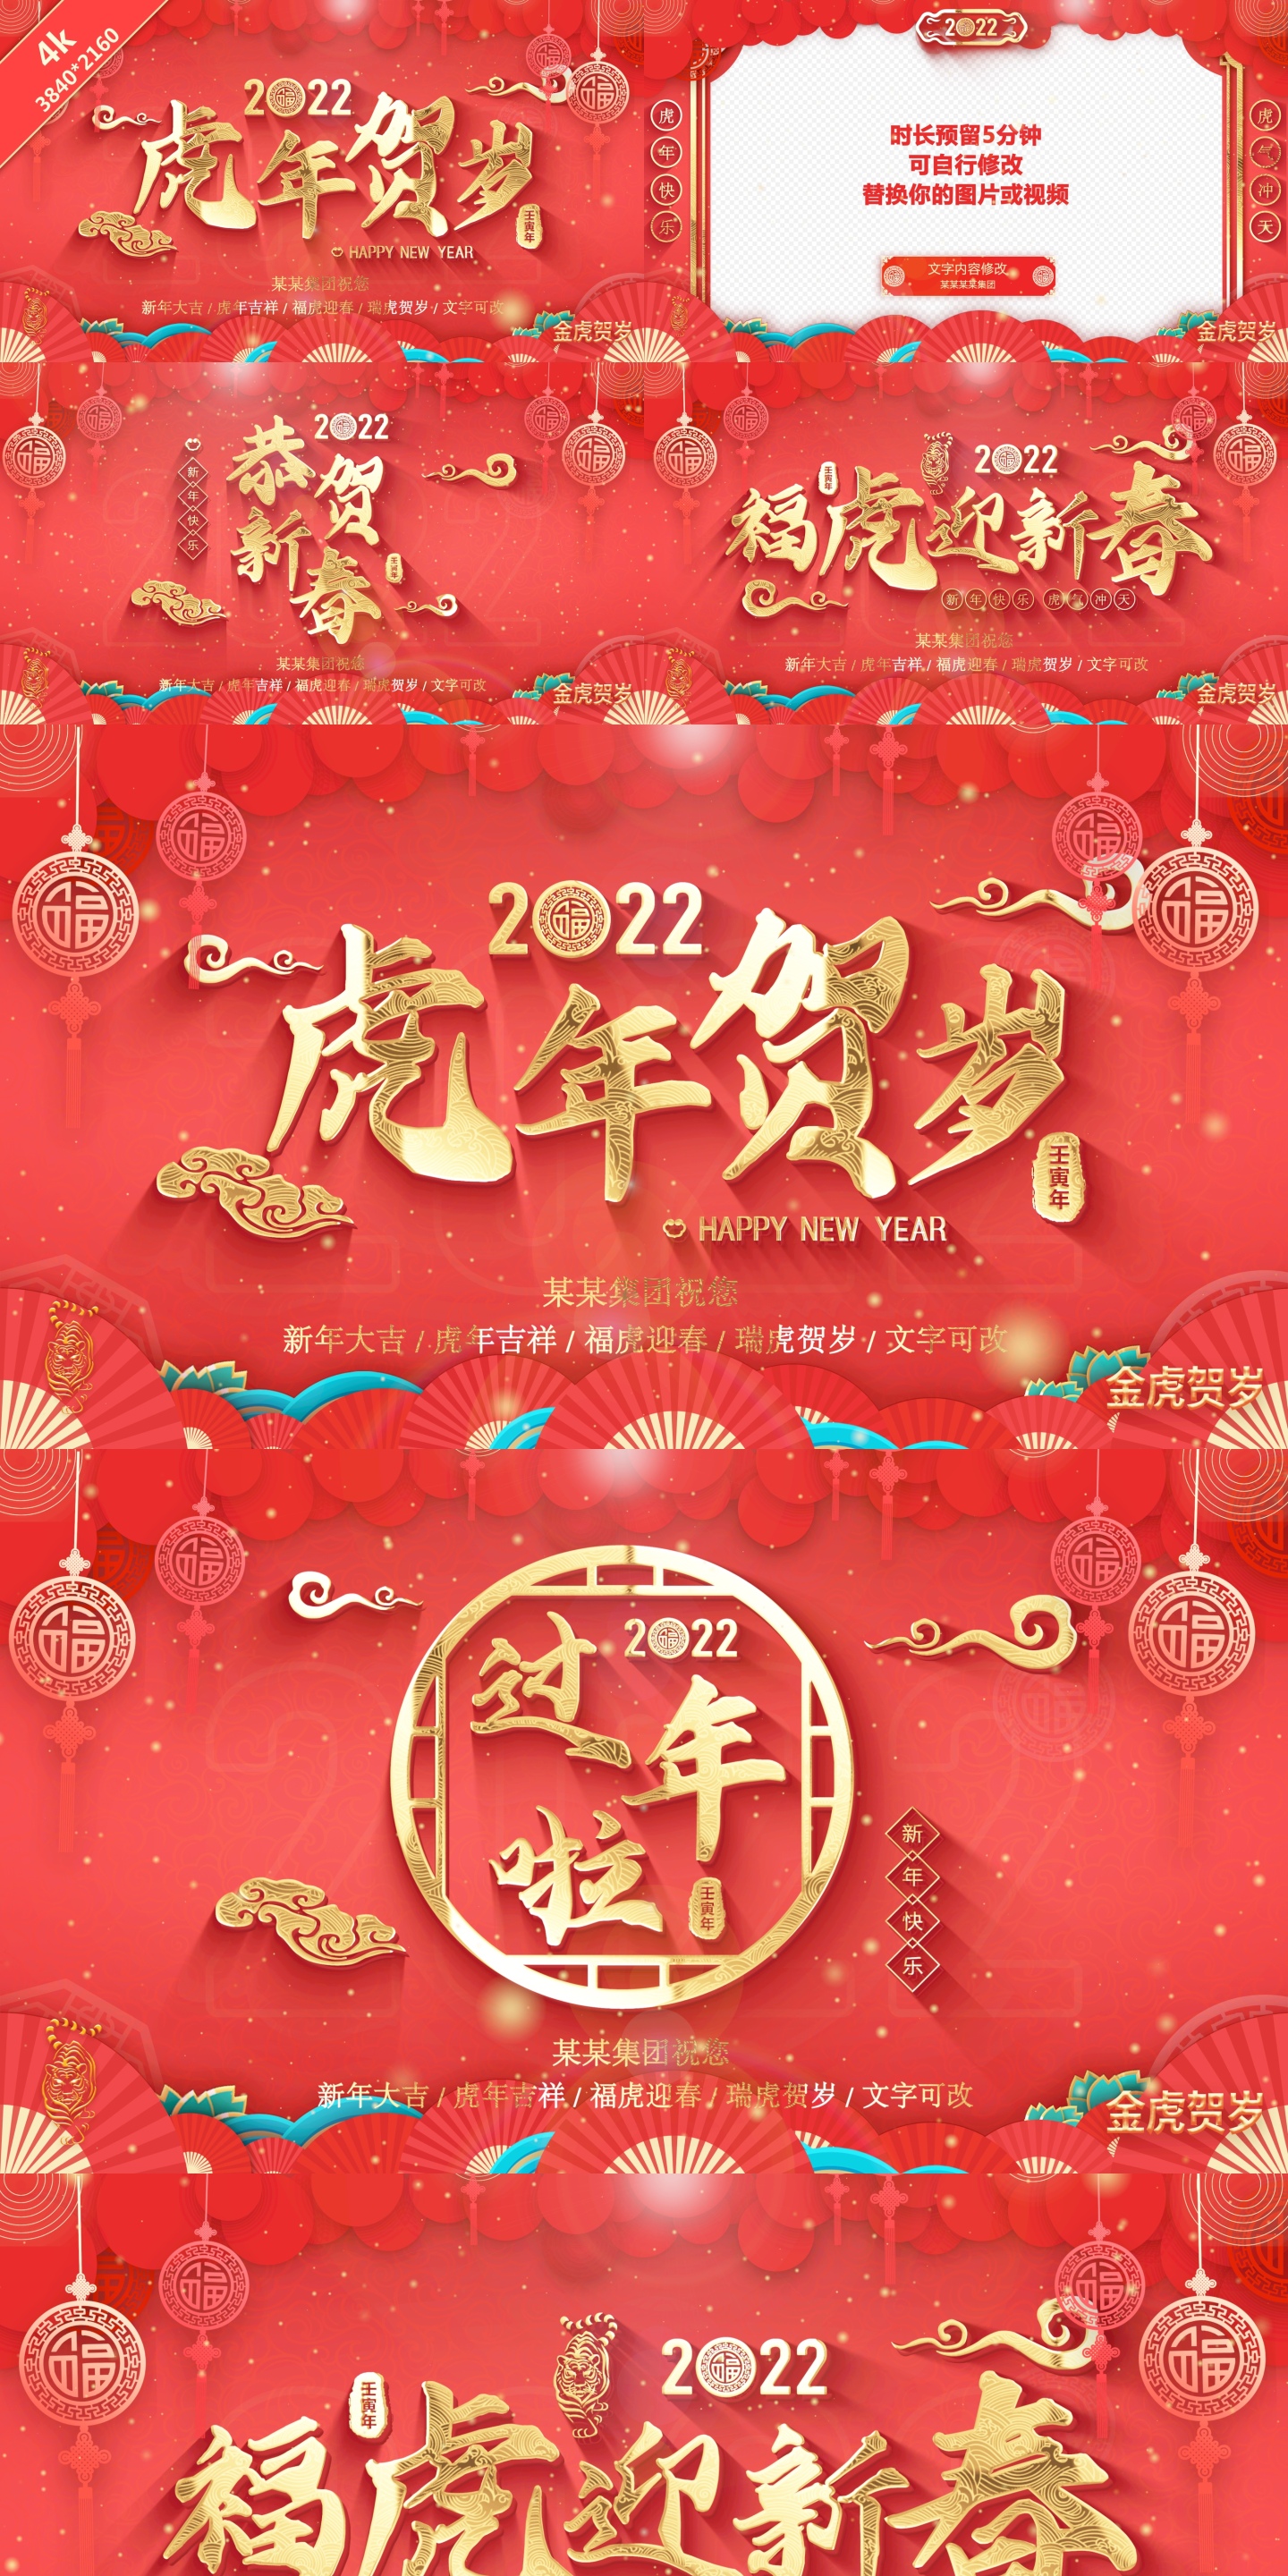 【原创】2022虎年春节拜年祝福边框ae